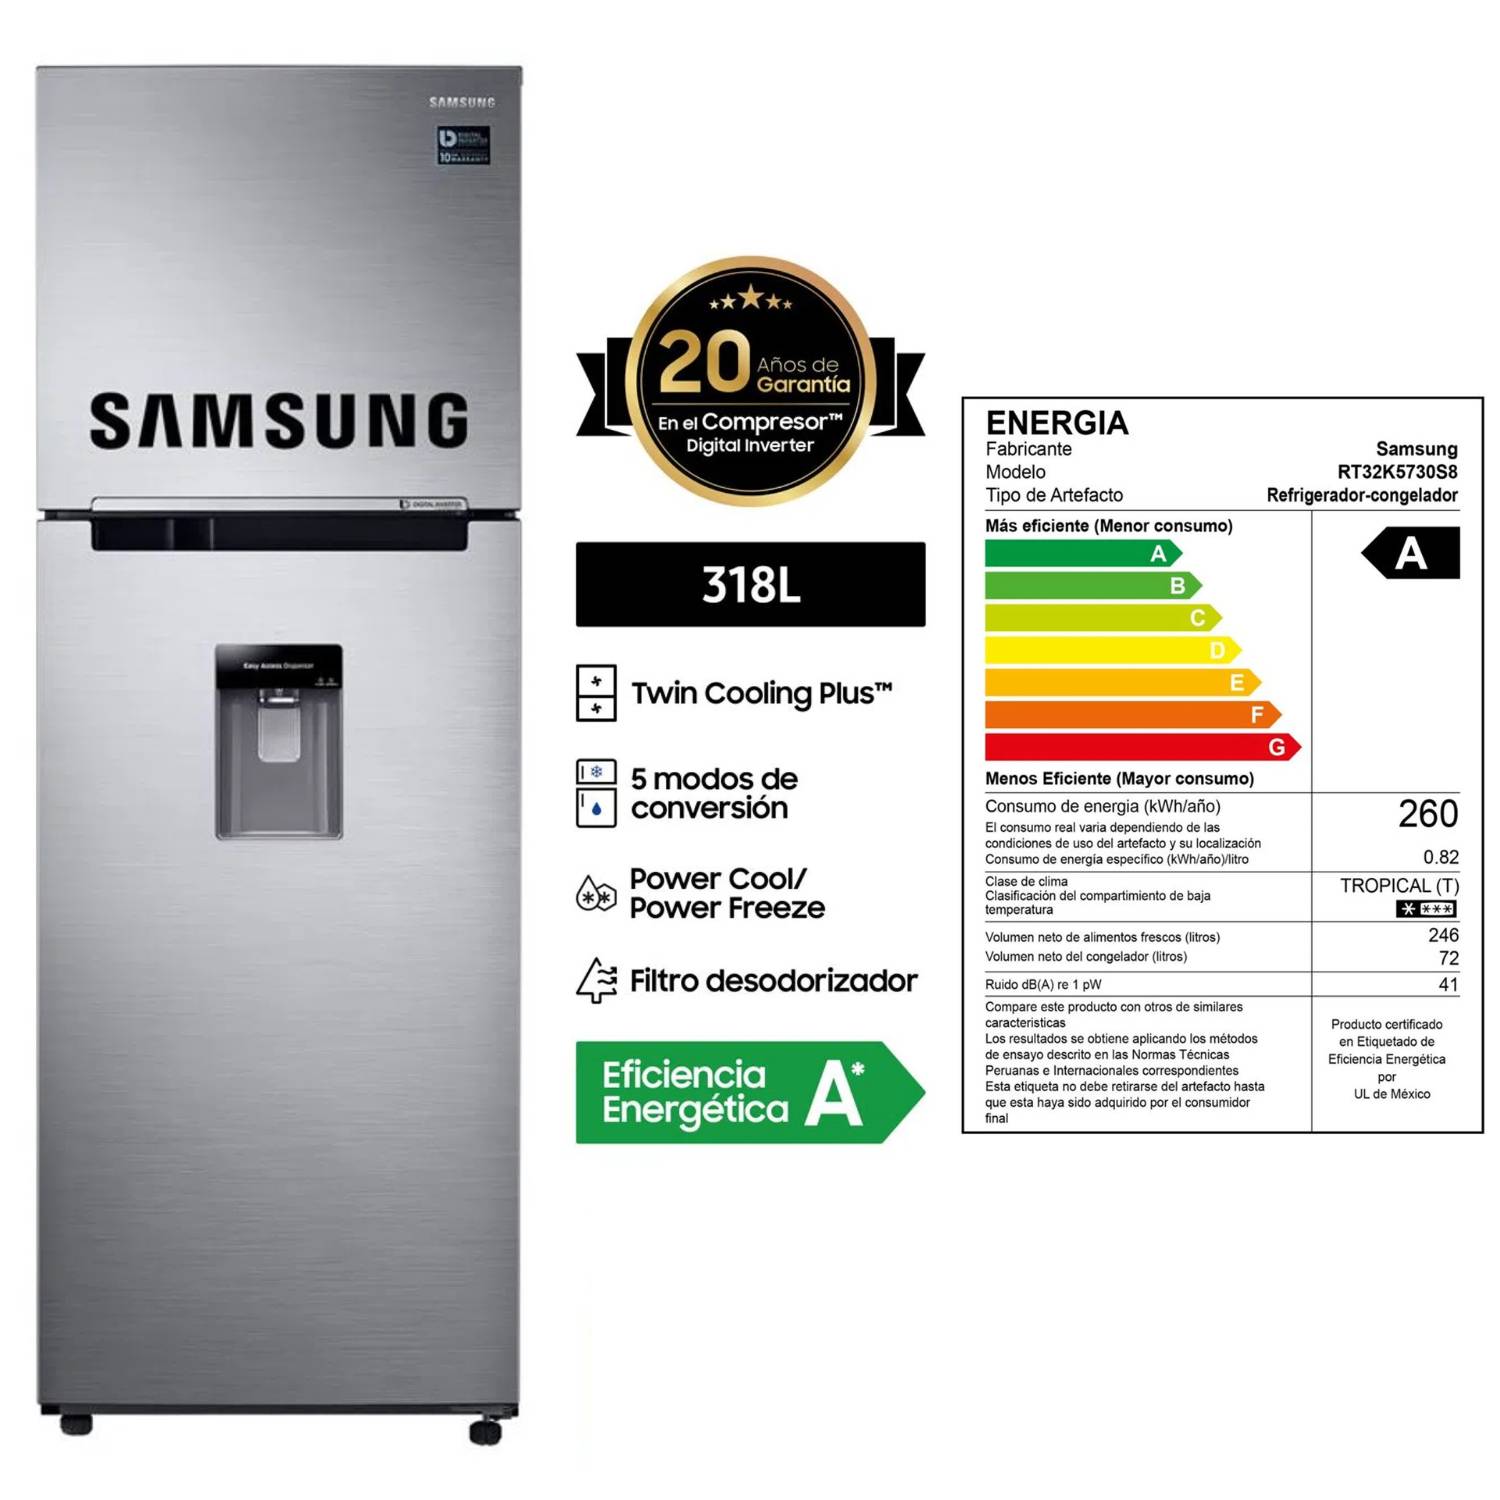 Refrigeradora Samsung Top Mount 318Lt RT32K5730S8 Inox